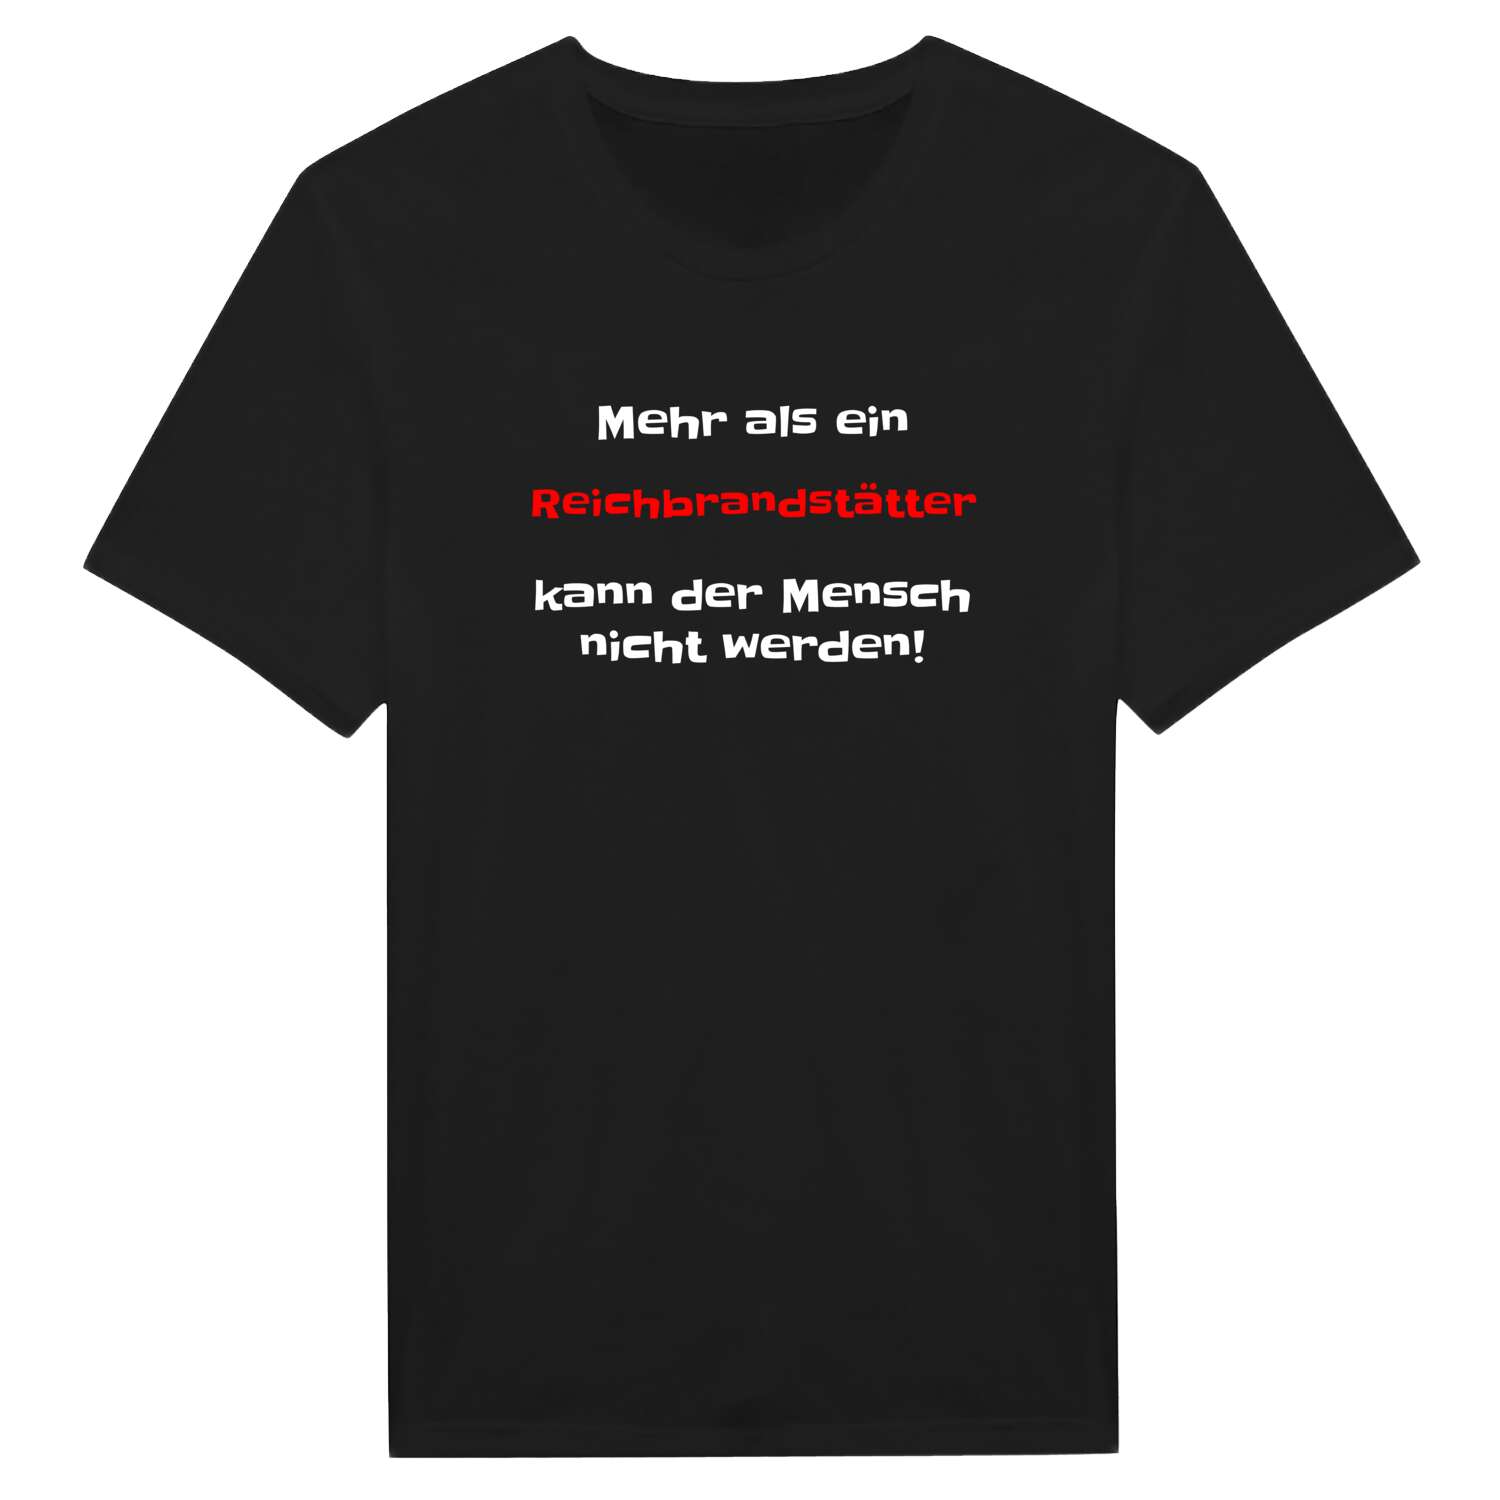 Reichbrandstätt T-Shirt »Mehr als ein«